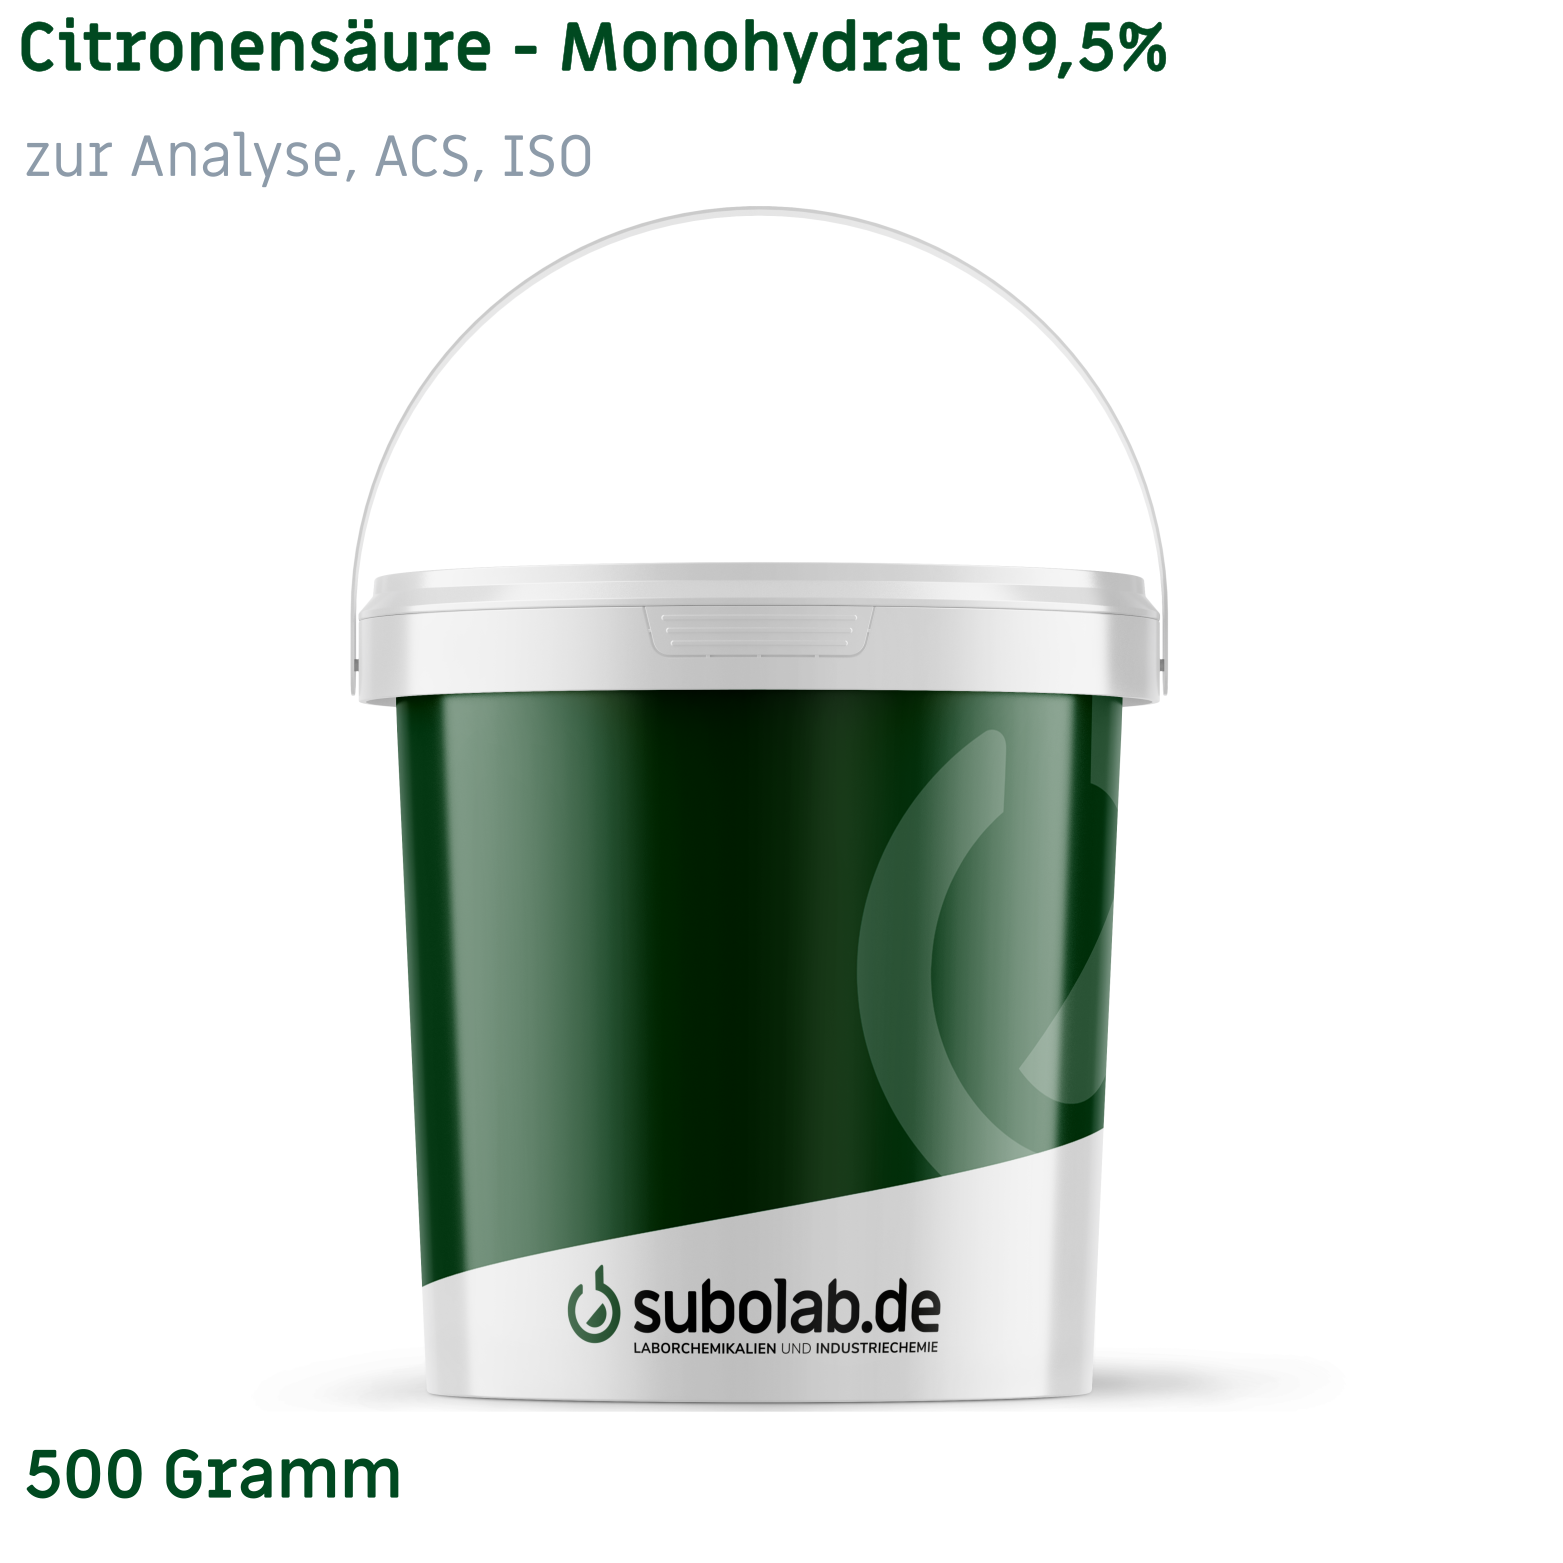 Bild von Citronensäure - Monohydrat 99,5% zur Analyse, ACS, ISO (500 Gramm)